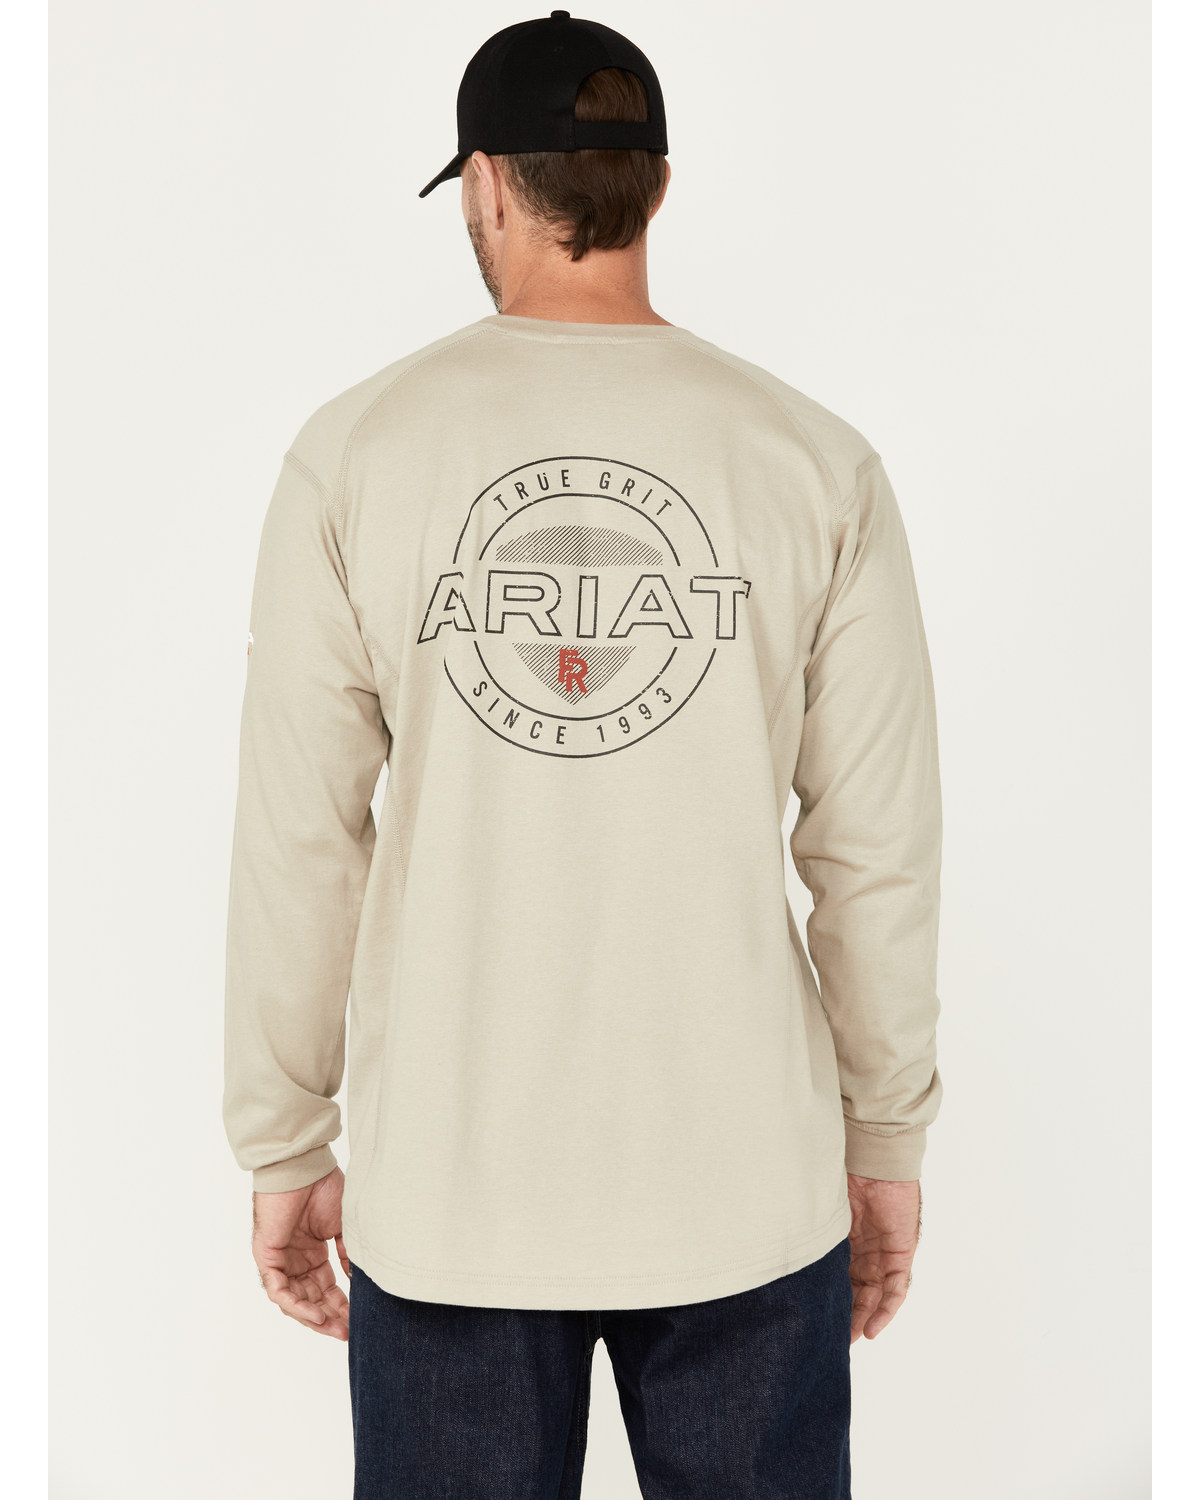 Ariat Men's FR Air True Grit Long Sleeve Work T-Shirt